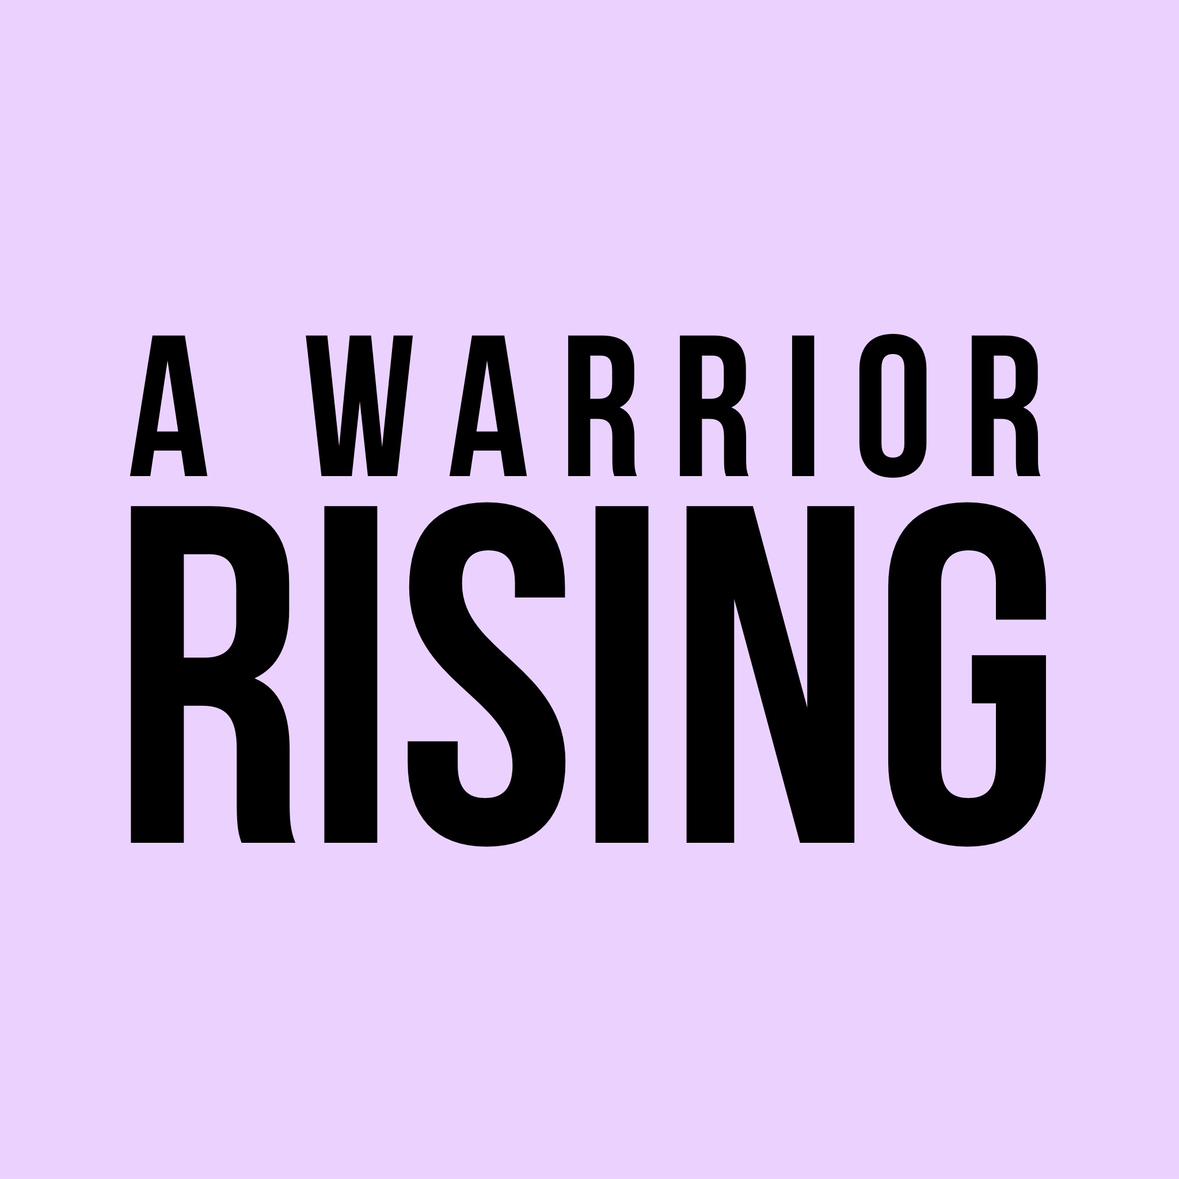 Awarriorrising